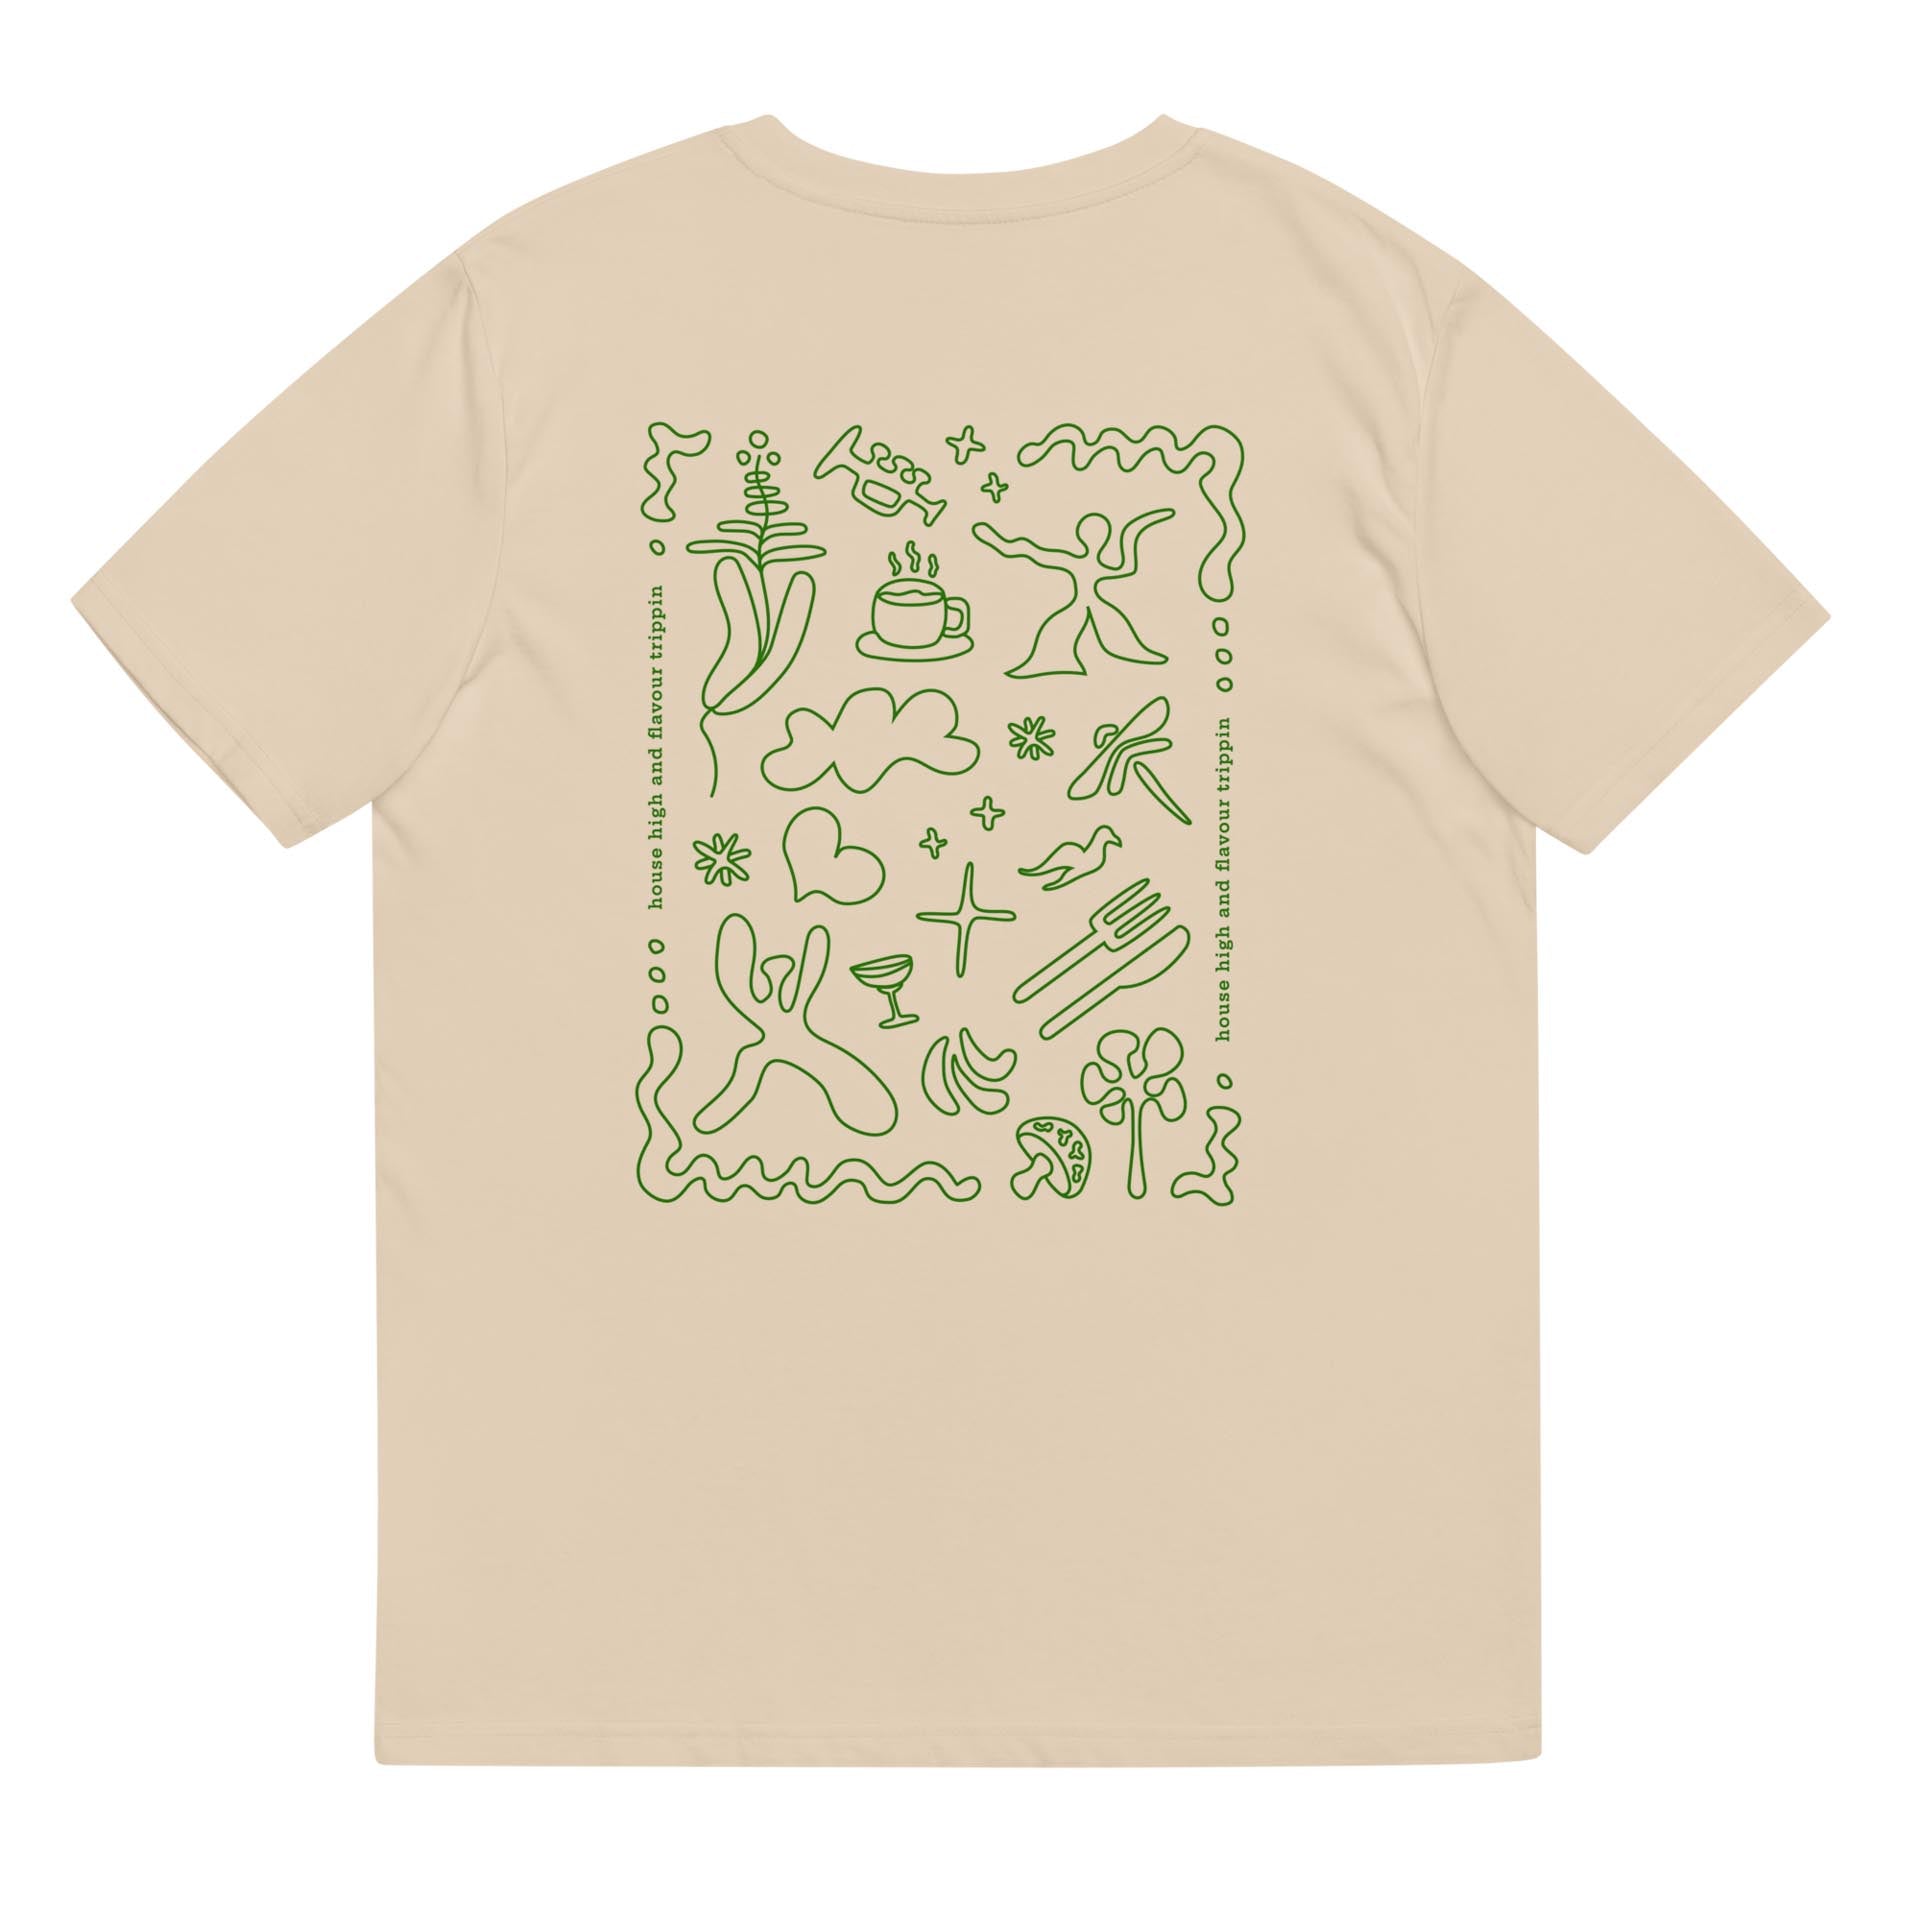 FLAVOR FUSION - Camiseta Bege/Verde Unissex